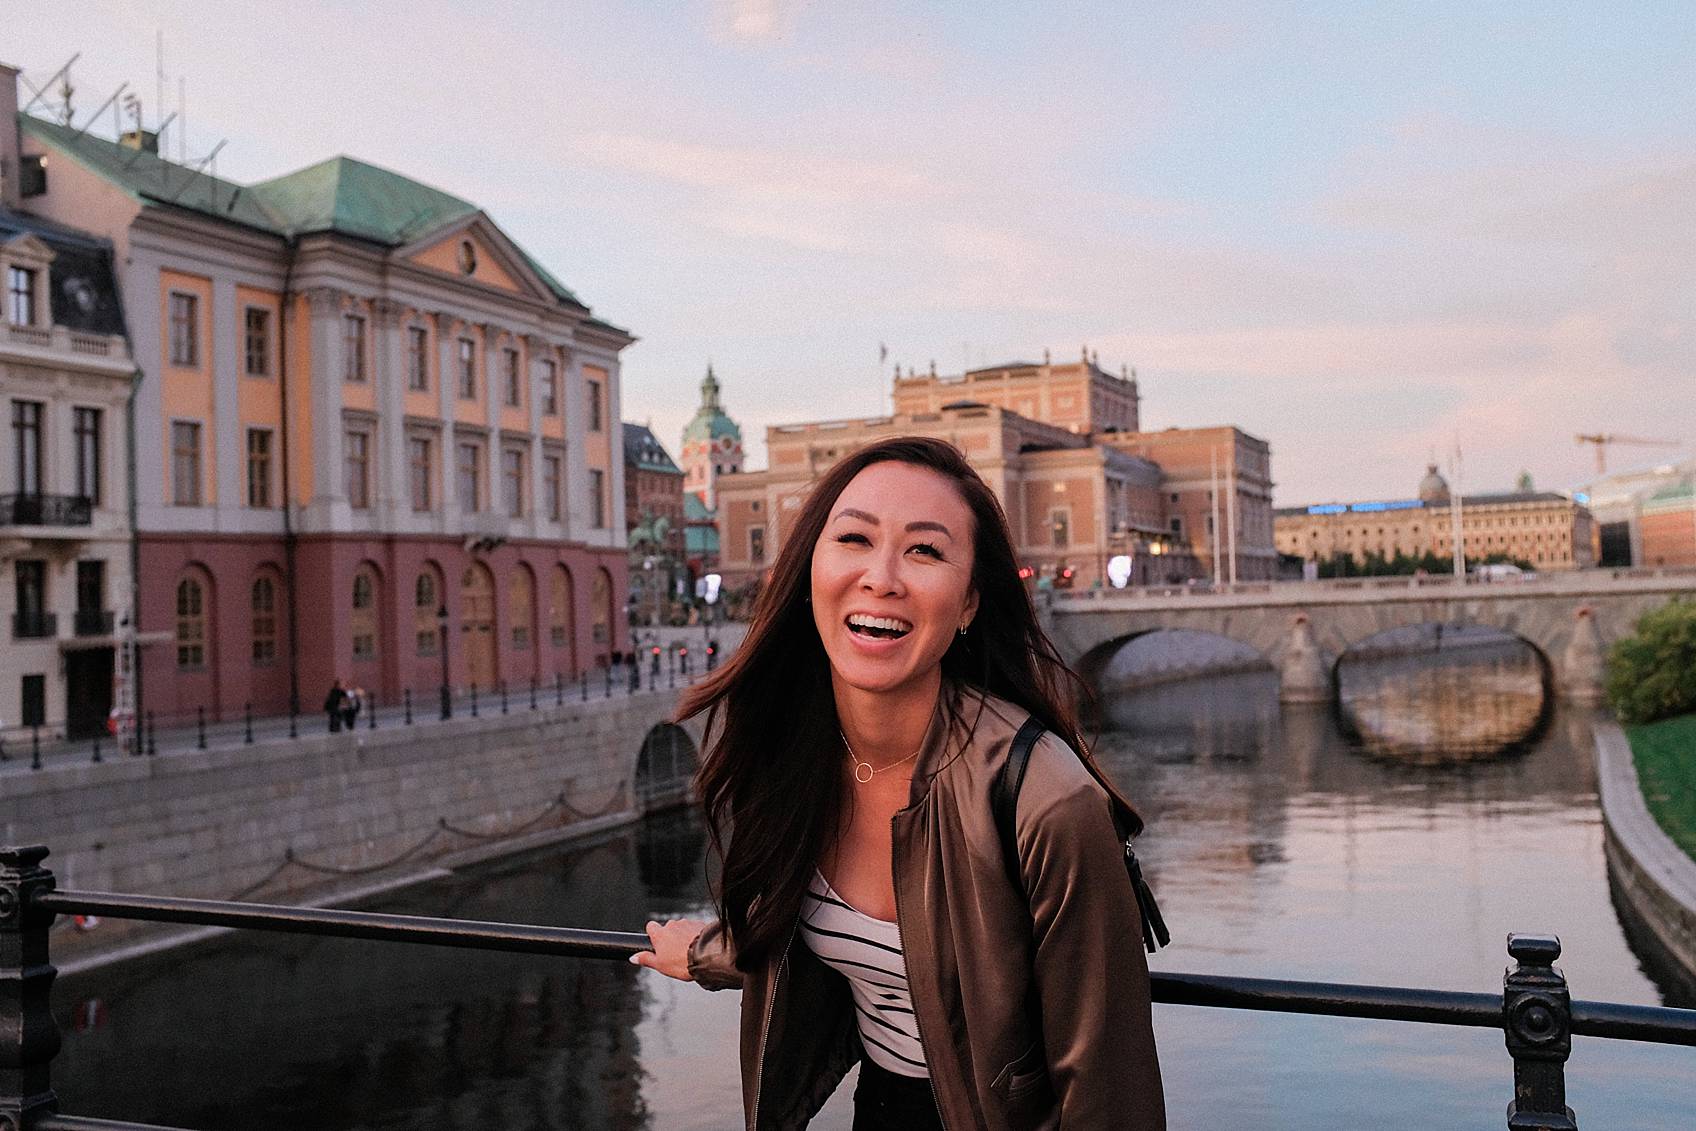 Photo tour of Stockholm: walking around laughing at bridge at sunset